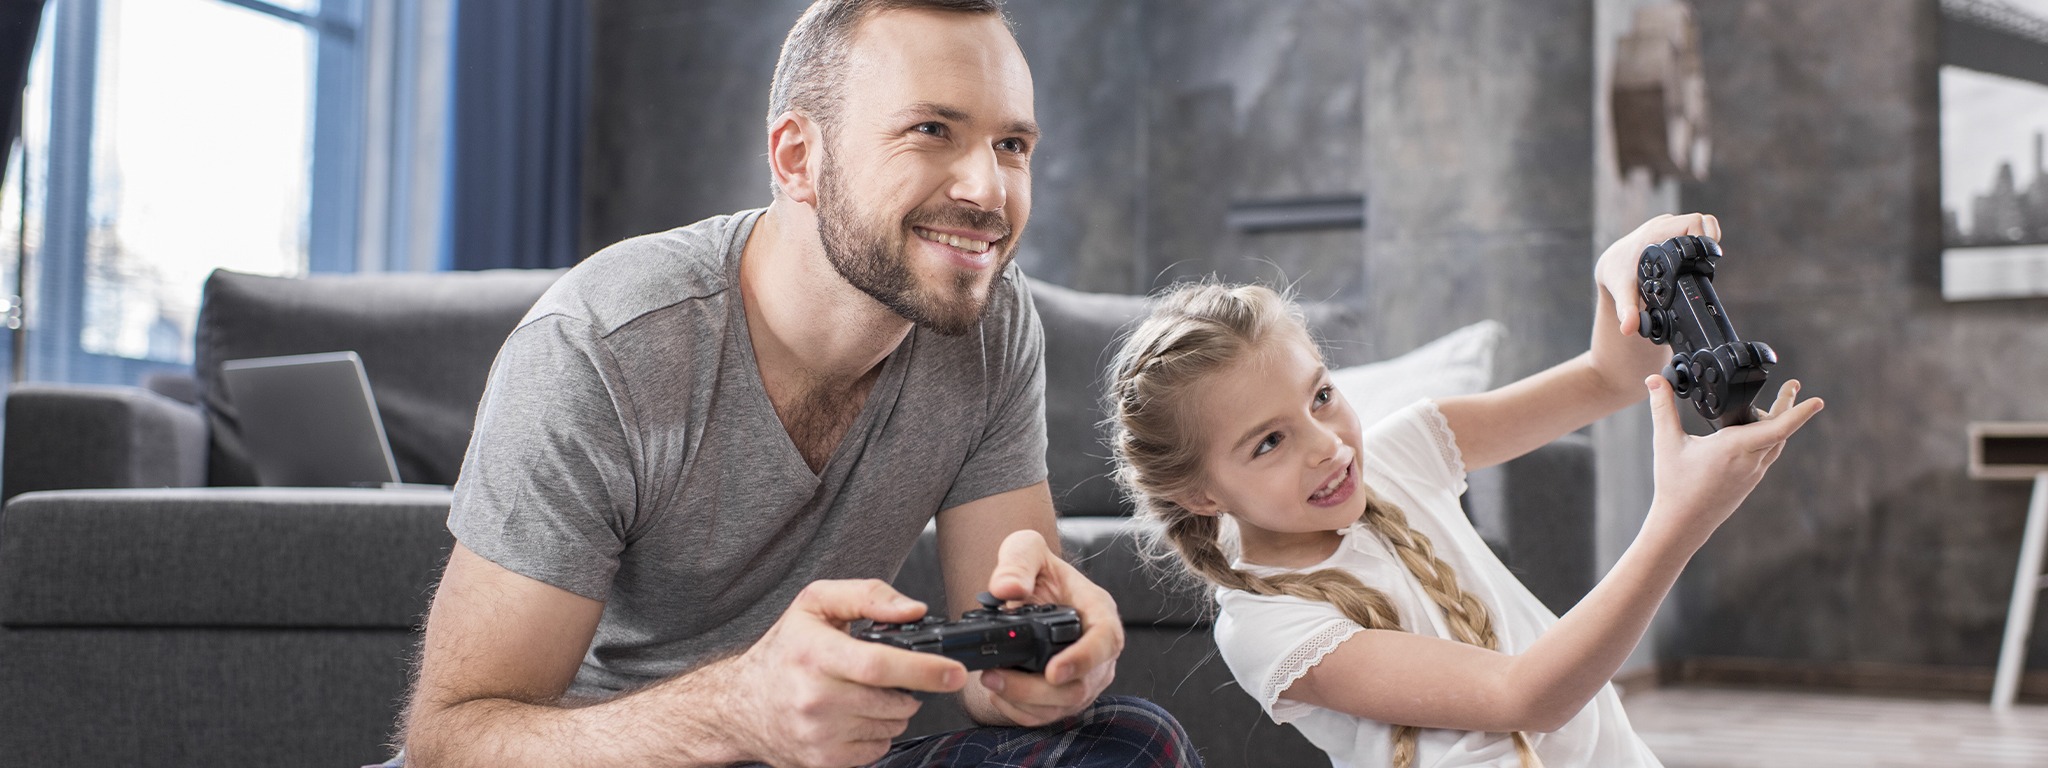 un padre con su hija, sentados en la alfombra de su hogar sumergidos en videojuegos